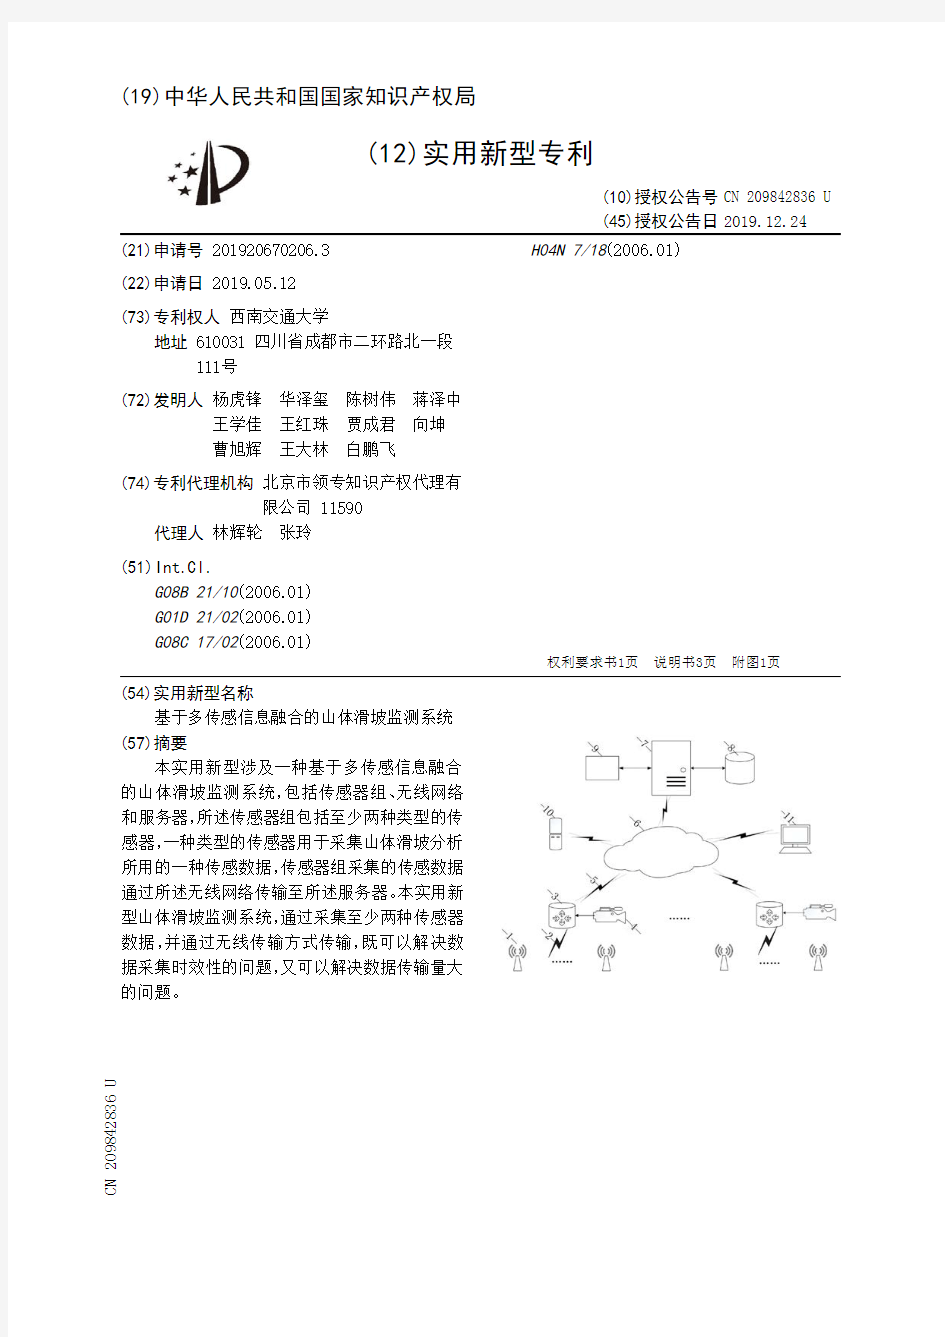 【CN209842836U】基于多传感信息融合的山体滑坡监测系统【专利】